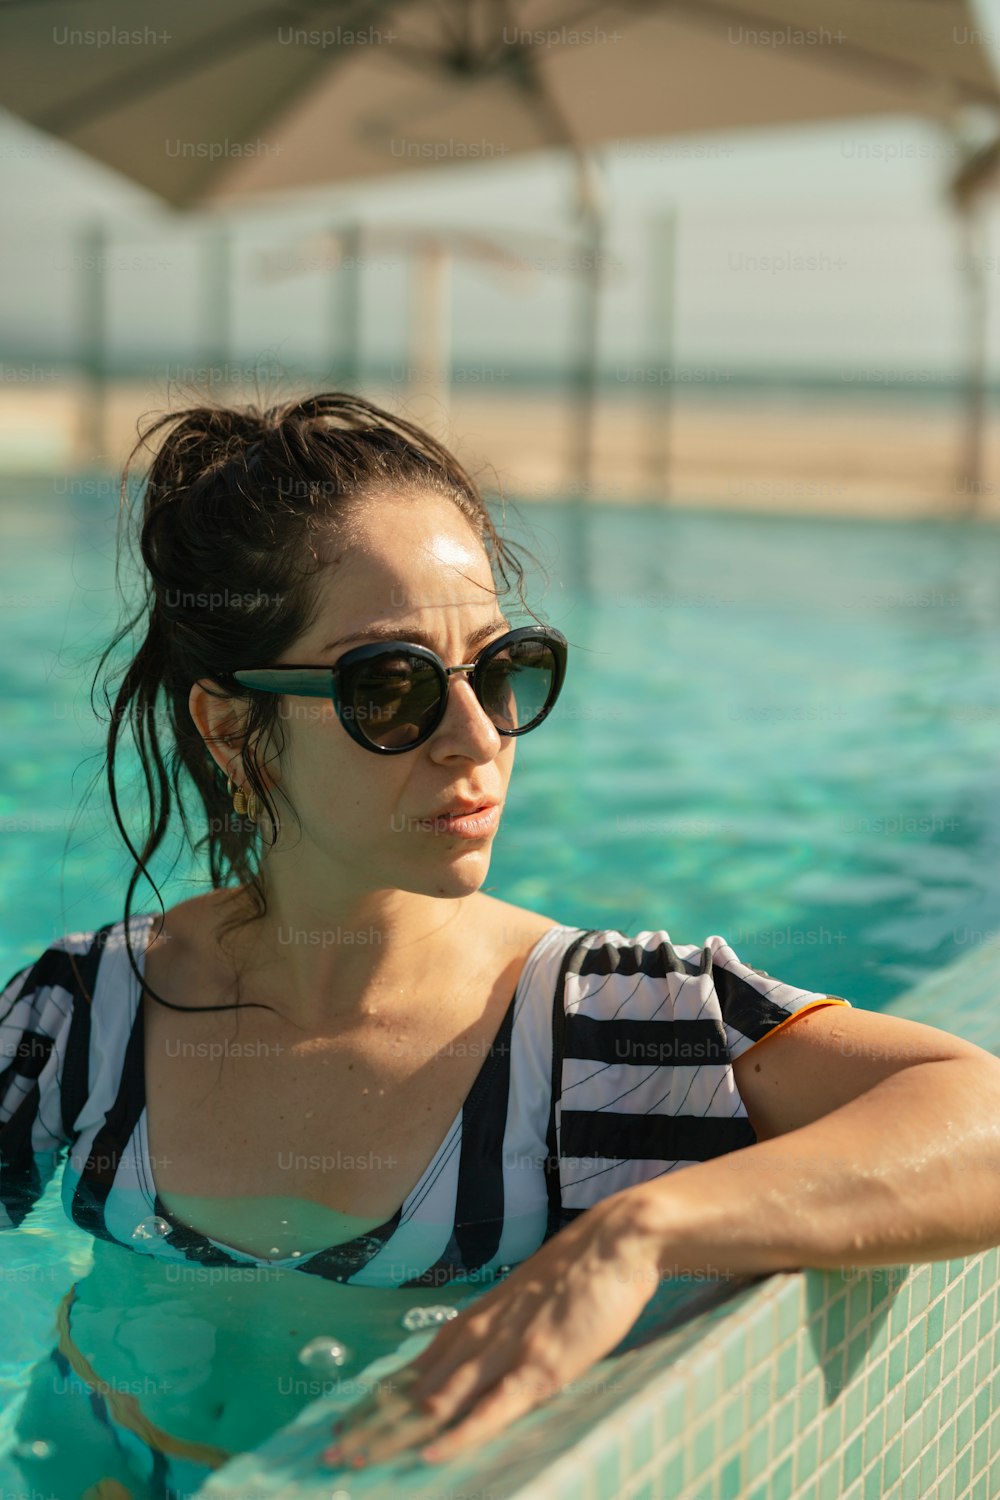 Une femme dans une piscine portant des lunettes de soleil et une chemise rayée